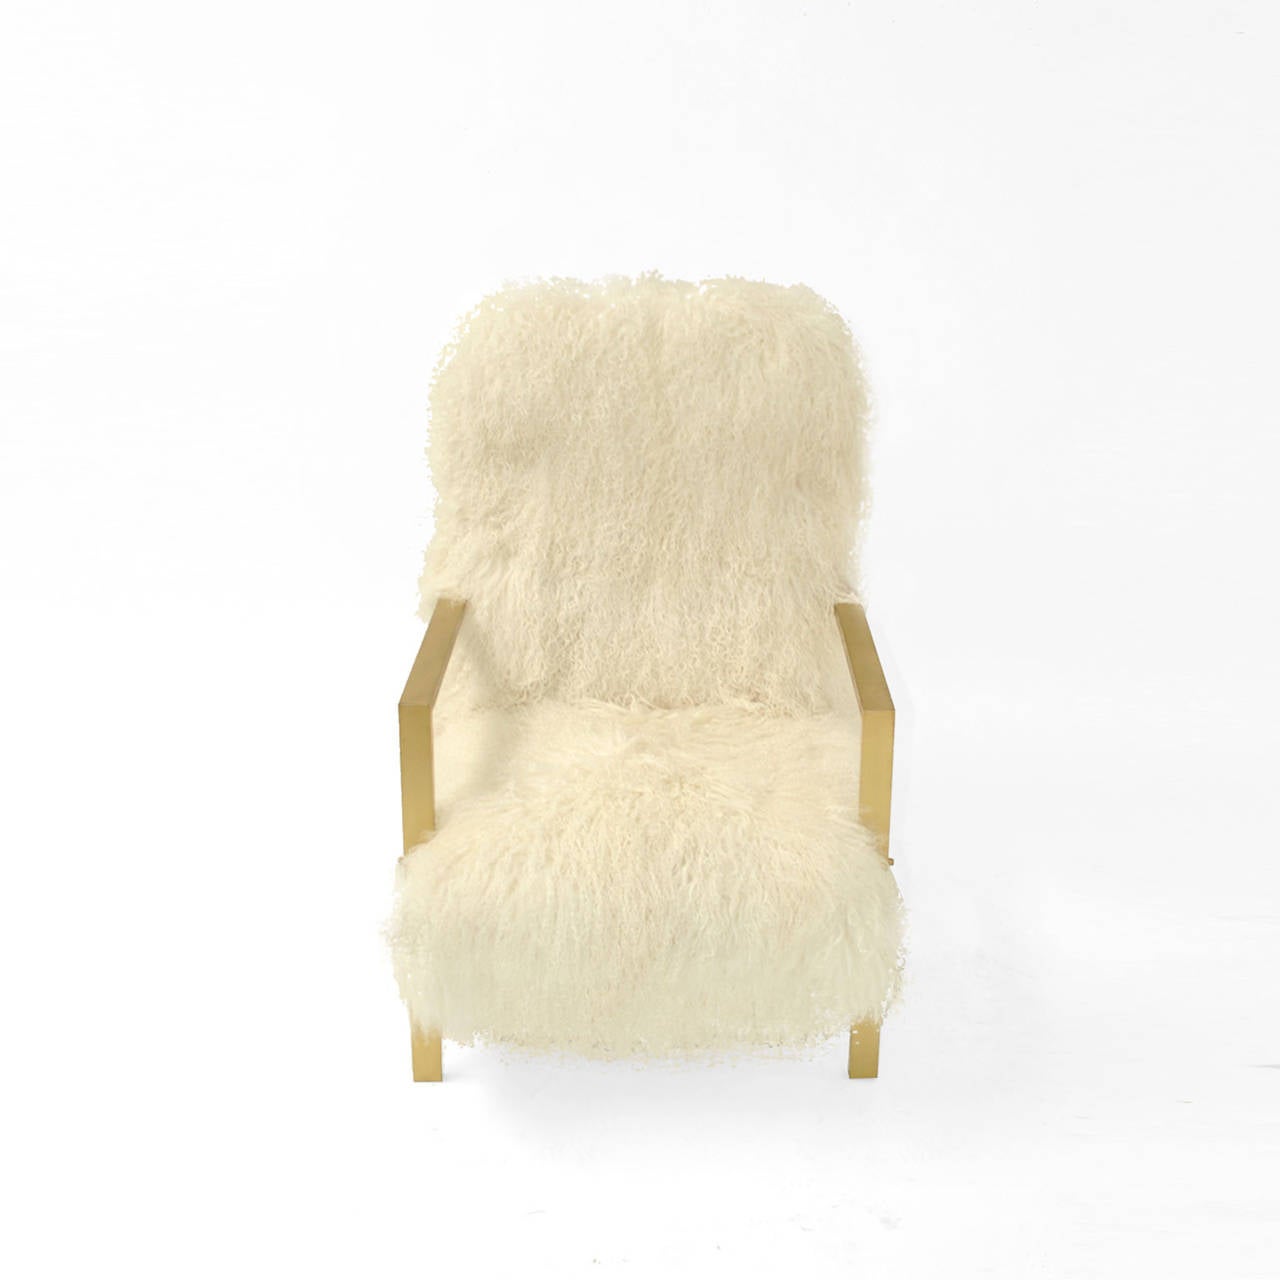 Bequeme Sessel, entworfen von dem kreativen Team L.A. Studio und hergestellt in Italien. Gepolstert mit natürlichem, weißem Fell der mongolischen Ziege.
Das Gestell ist aus Massivholz, die Armlehnen und die Beine sind aus rechteckigem, massivem